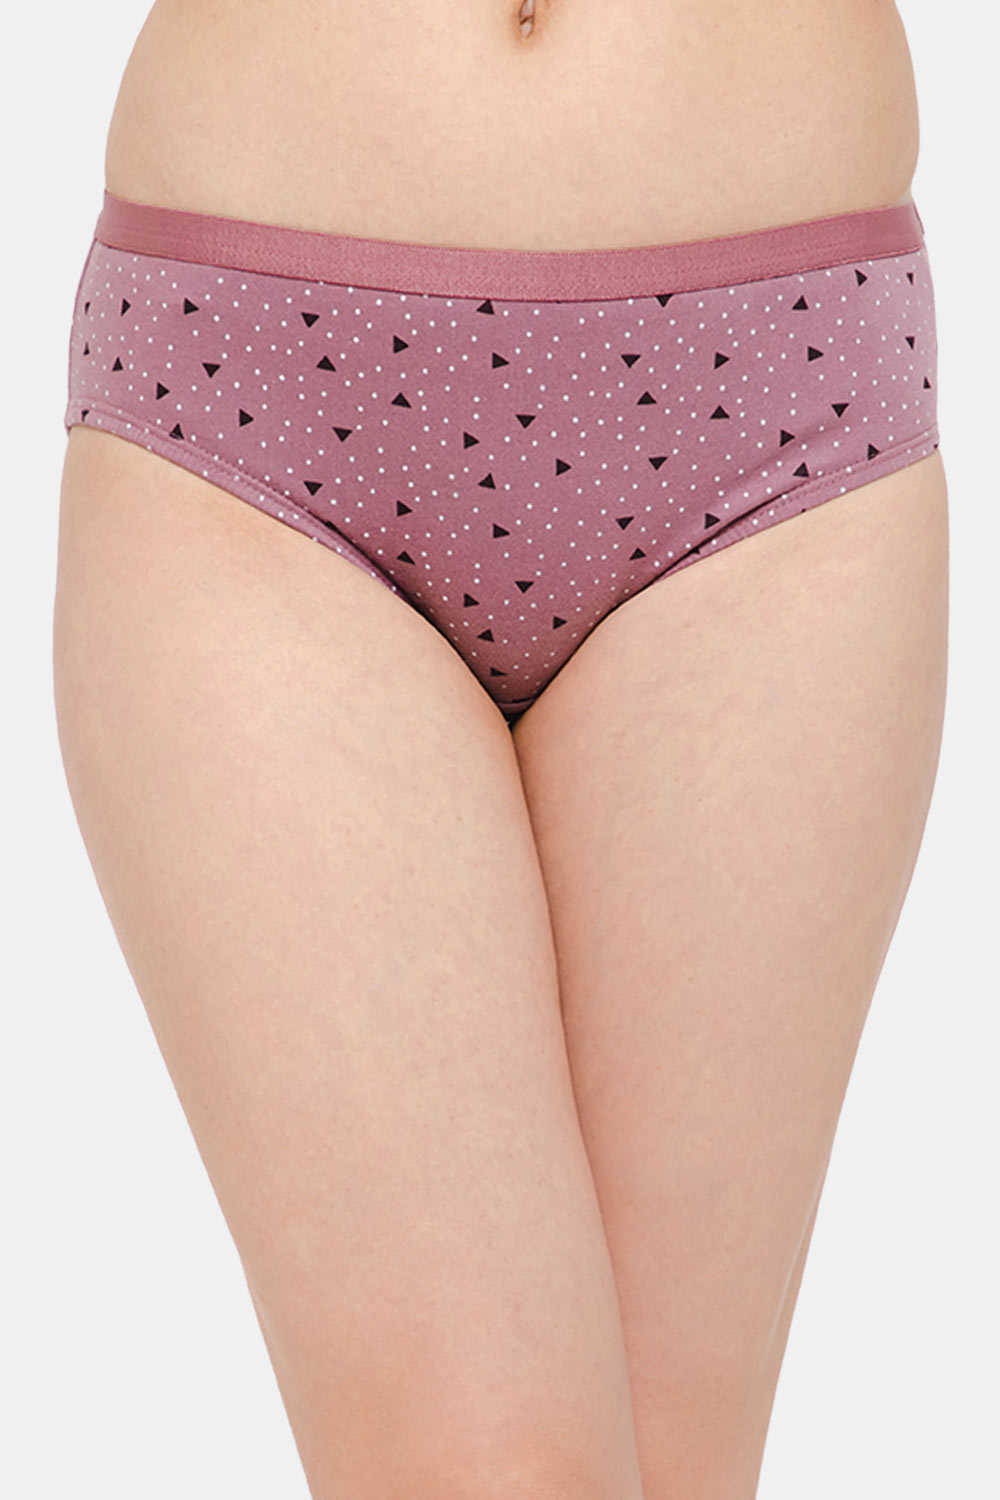 Printed Panty - Buy Printed Panties Online in India at